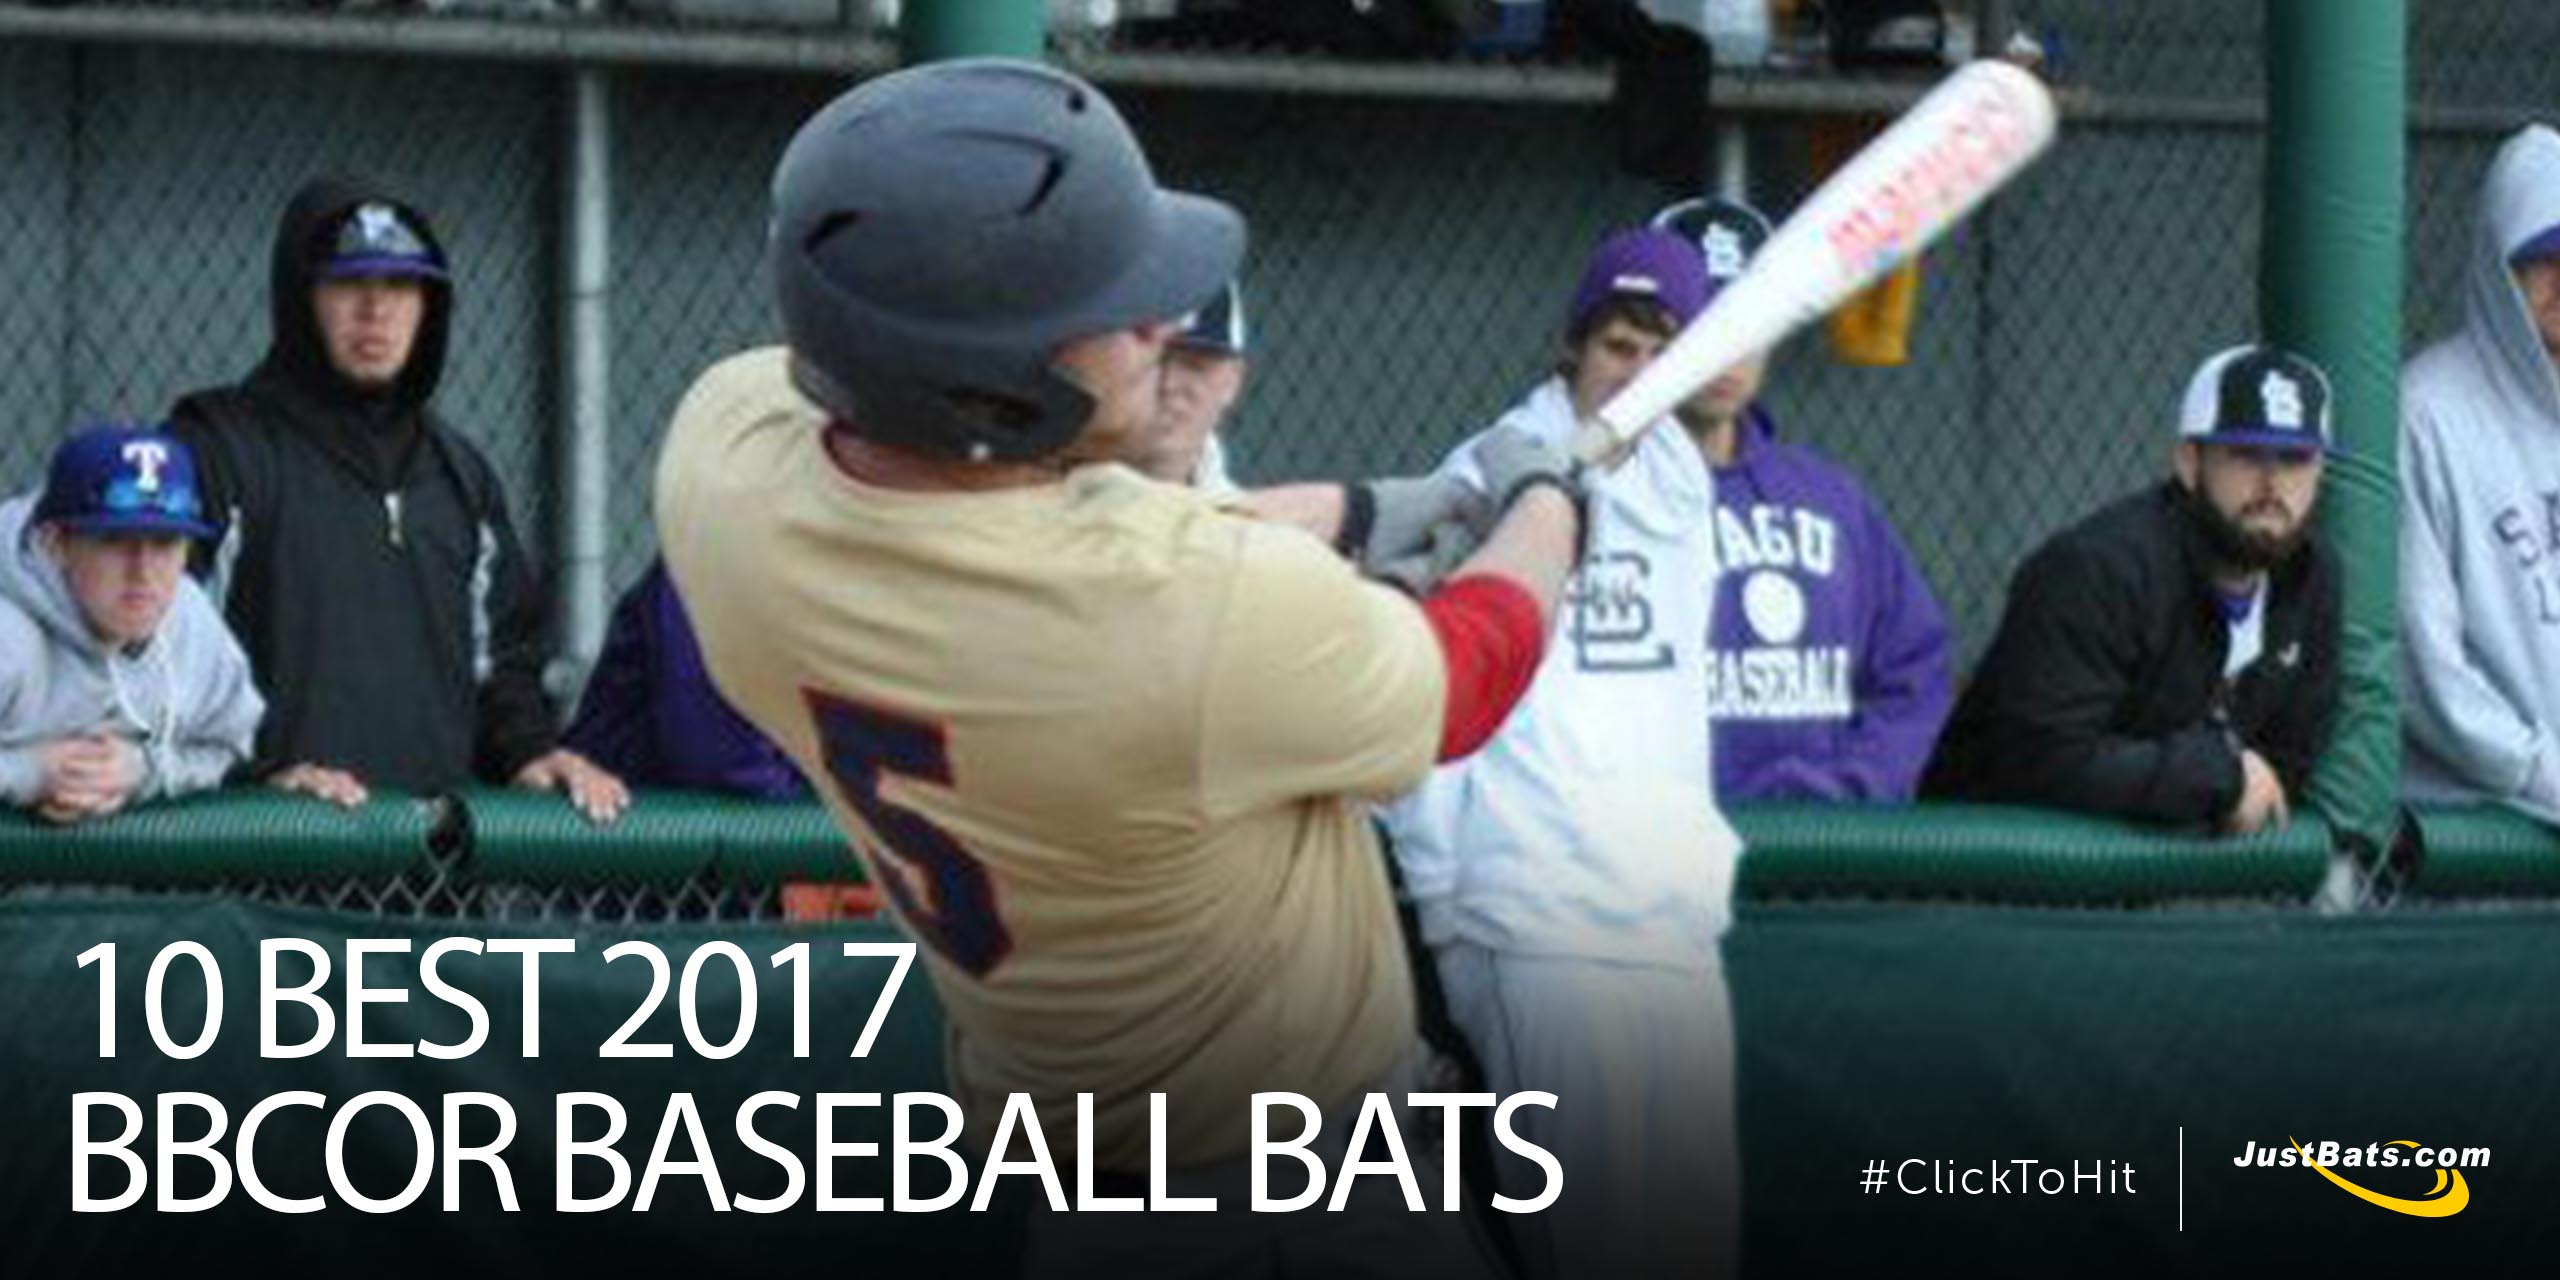 10 Best 2017 BBCOR baseball bats - Blog.jpg